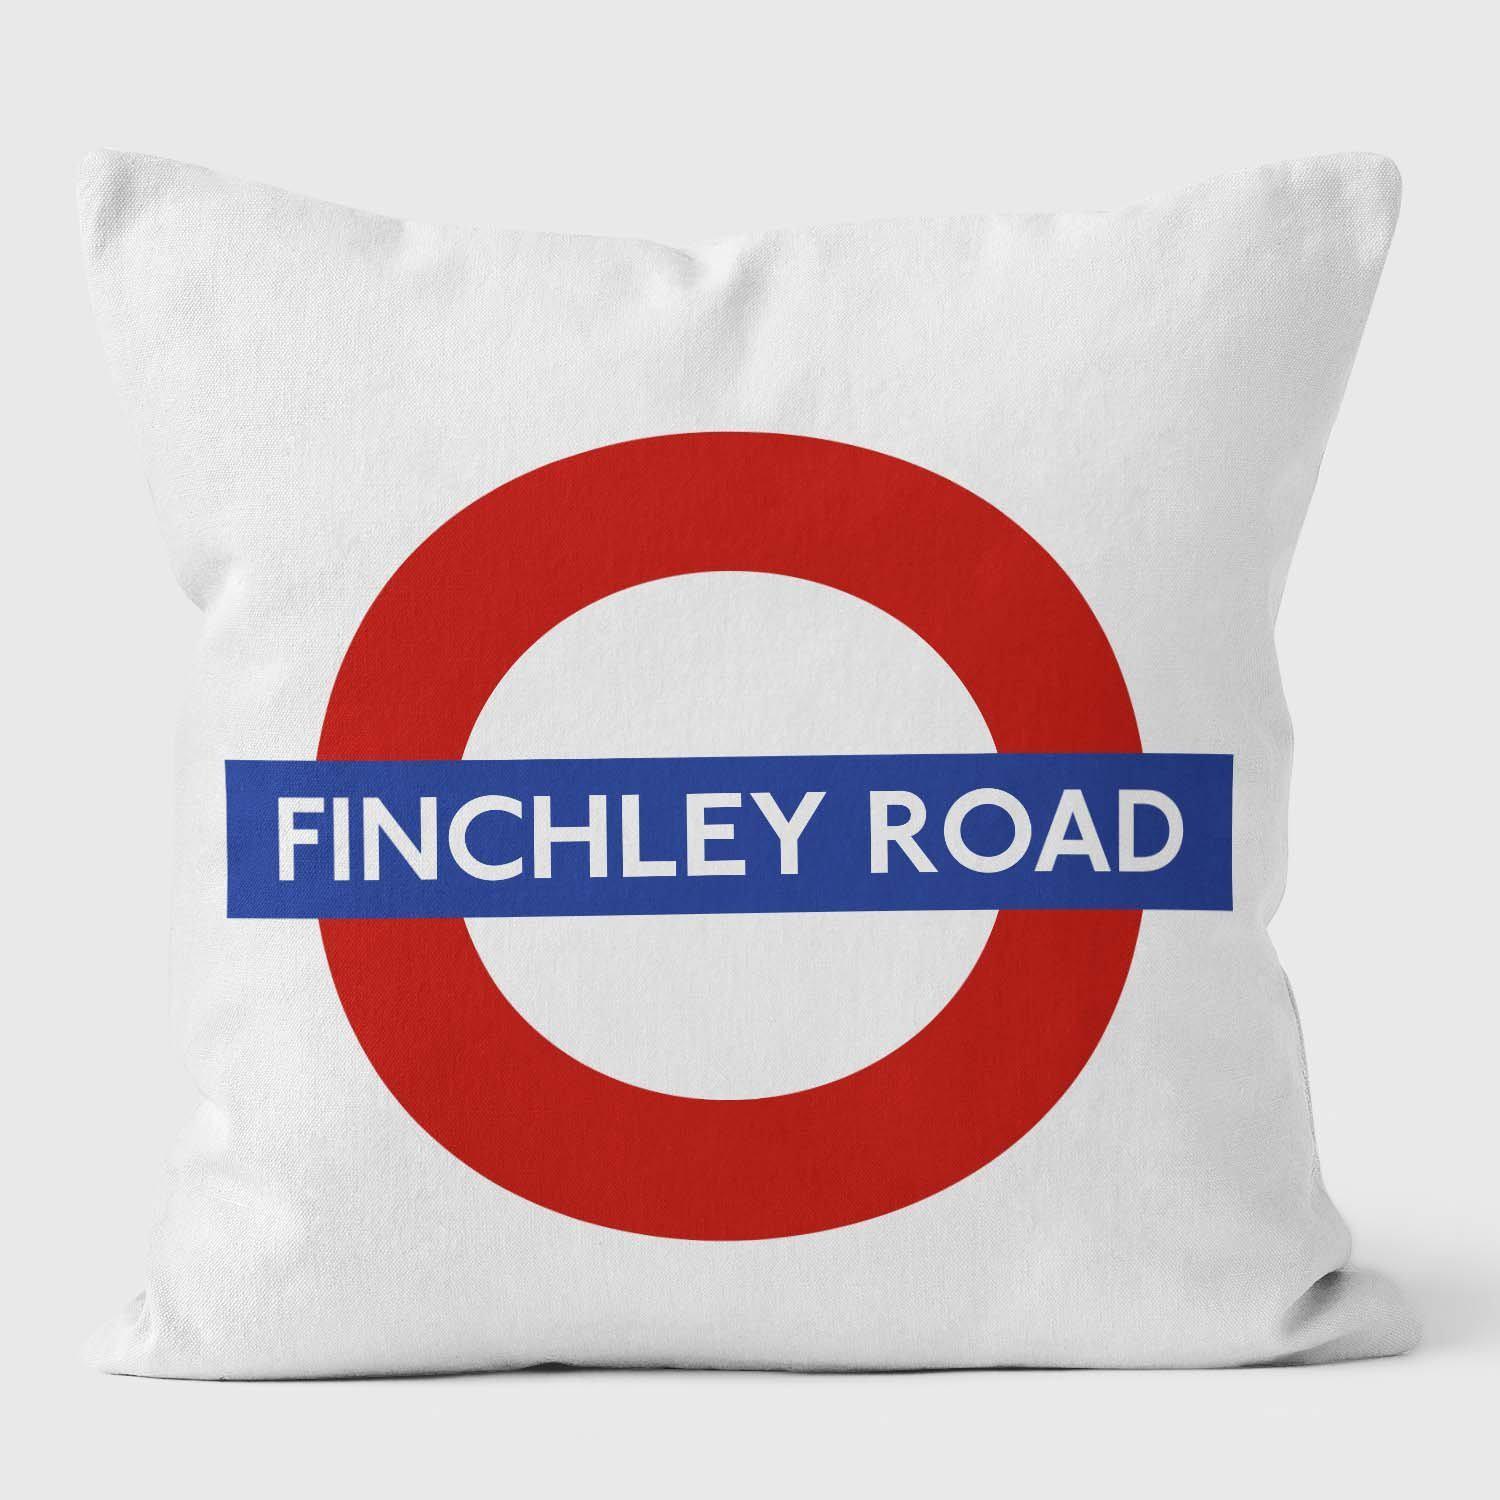 Finchley Road London Underground Tube Station Roundel Cushion - Handmade Cushions UK - WeLoveCushions